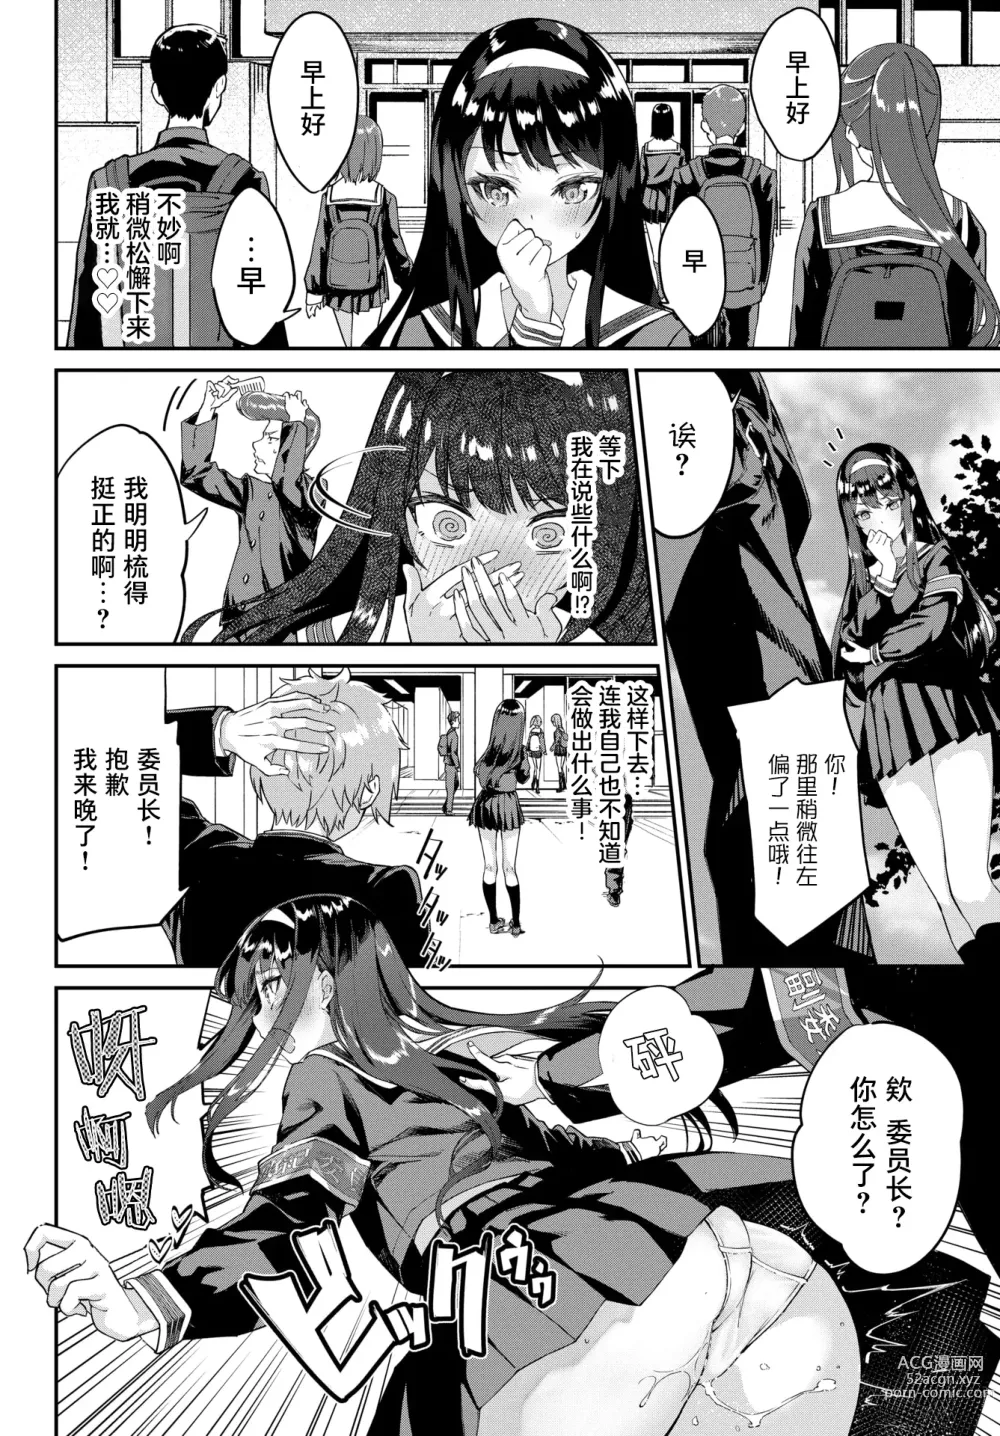 Page 7 of manga Funny Fuck!